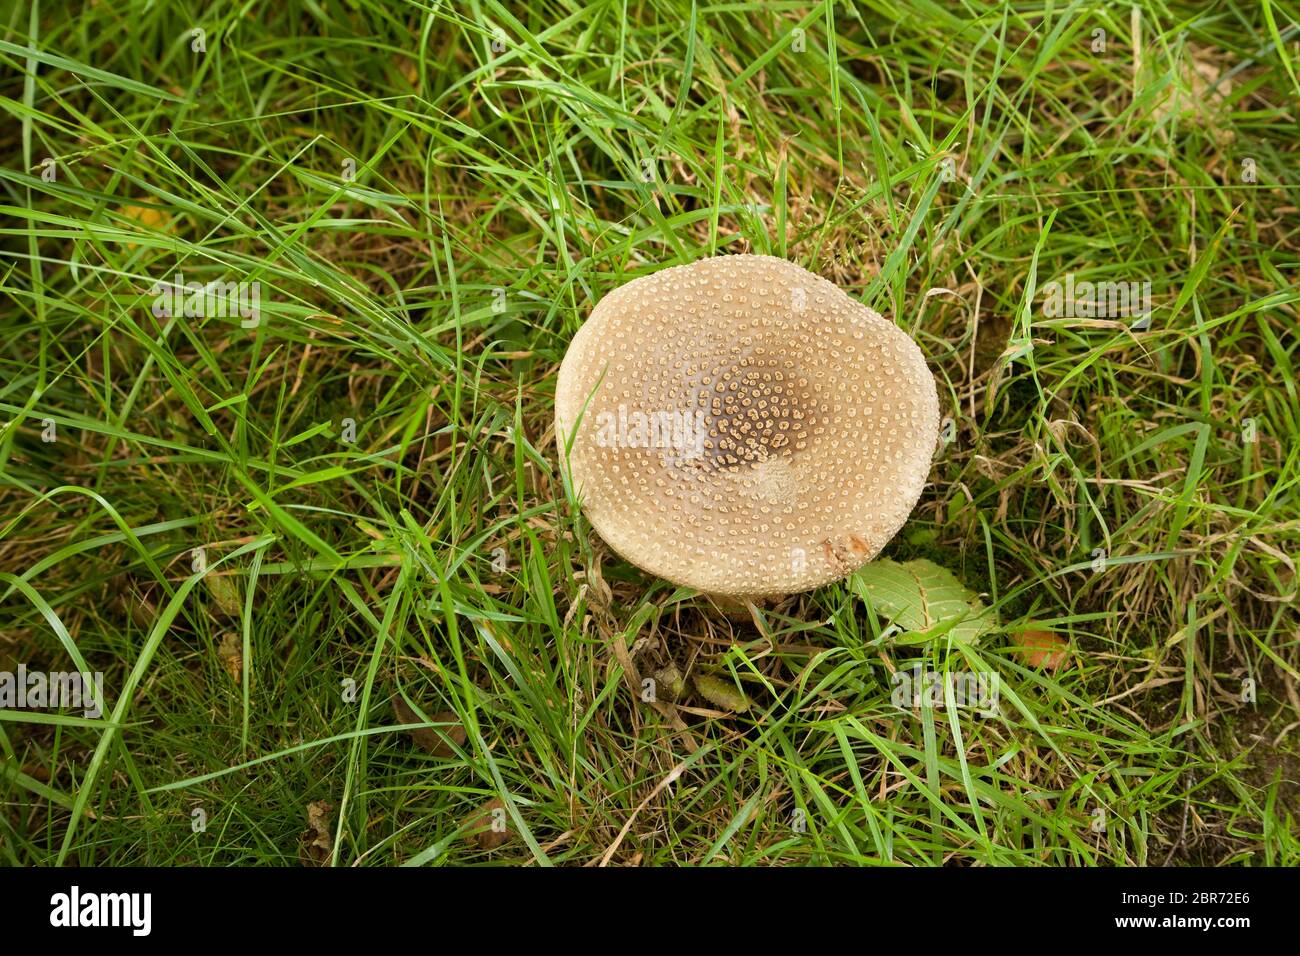 The Blusher mushroom (Amanita rubescens) Stock Photo